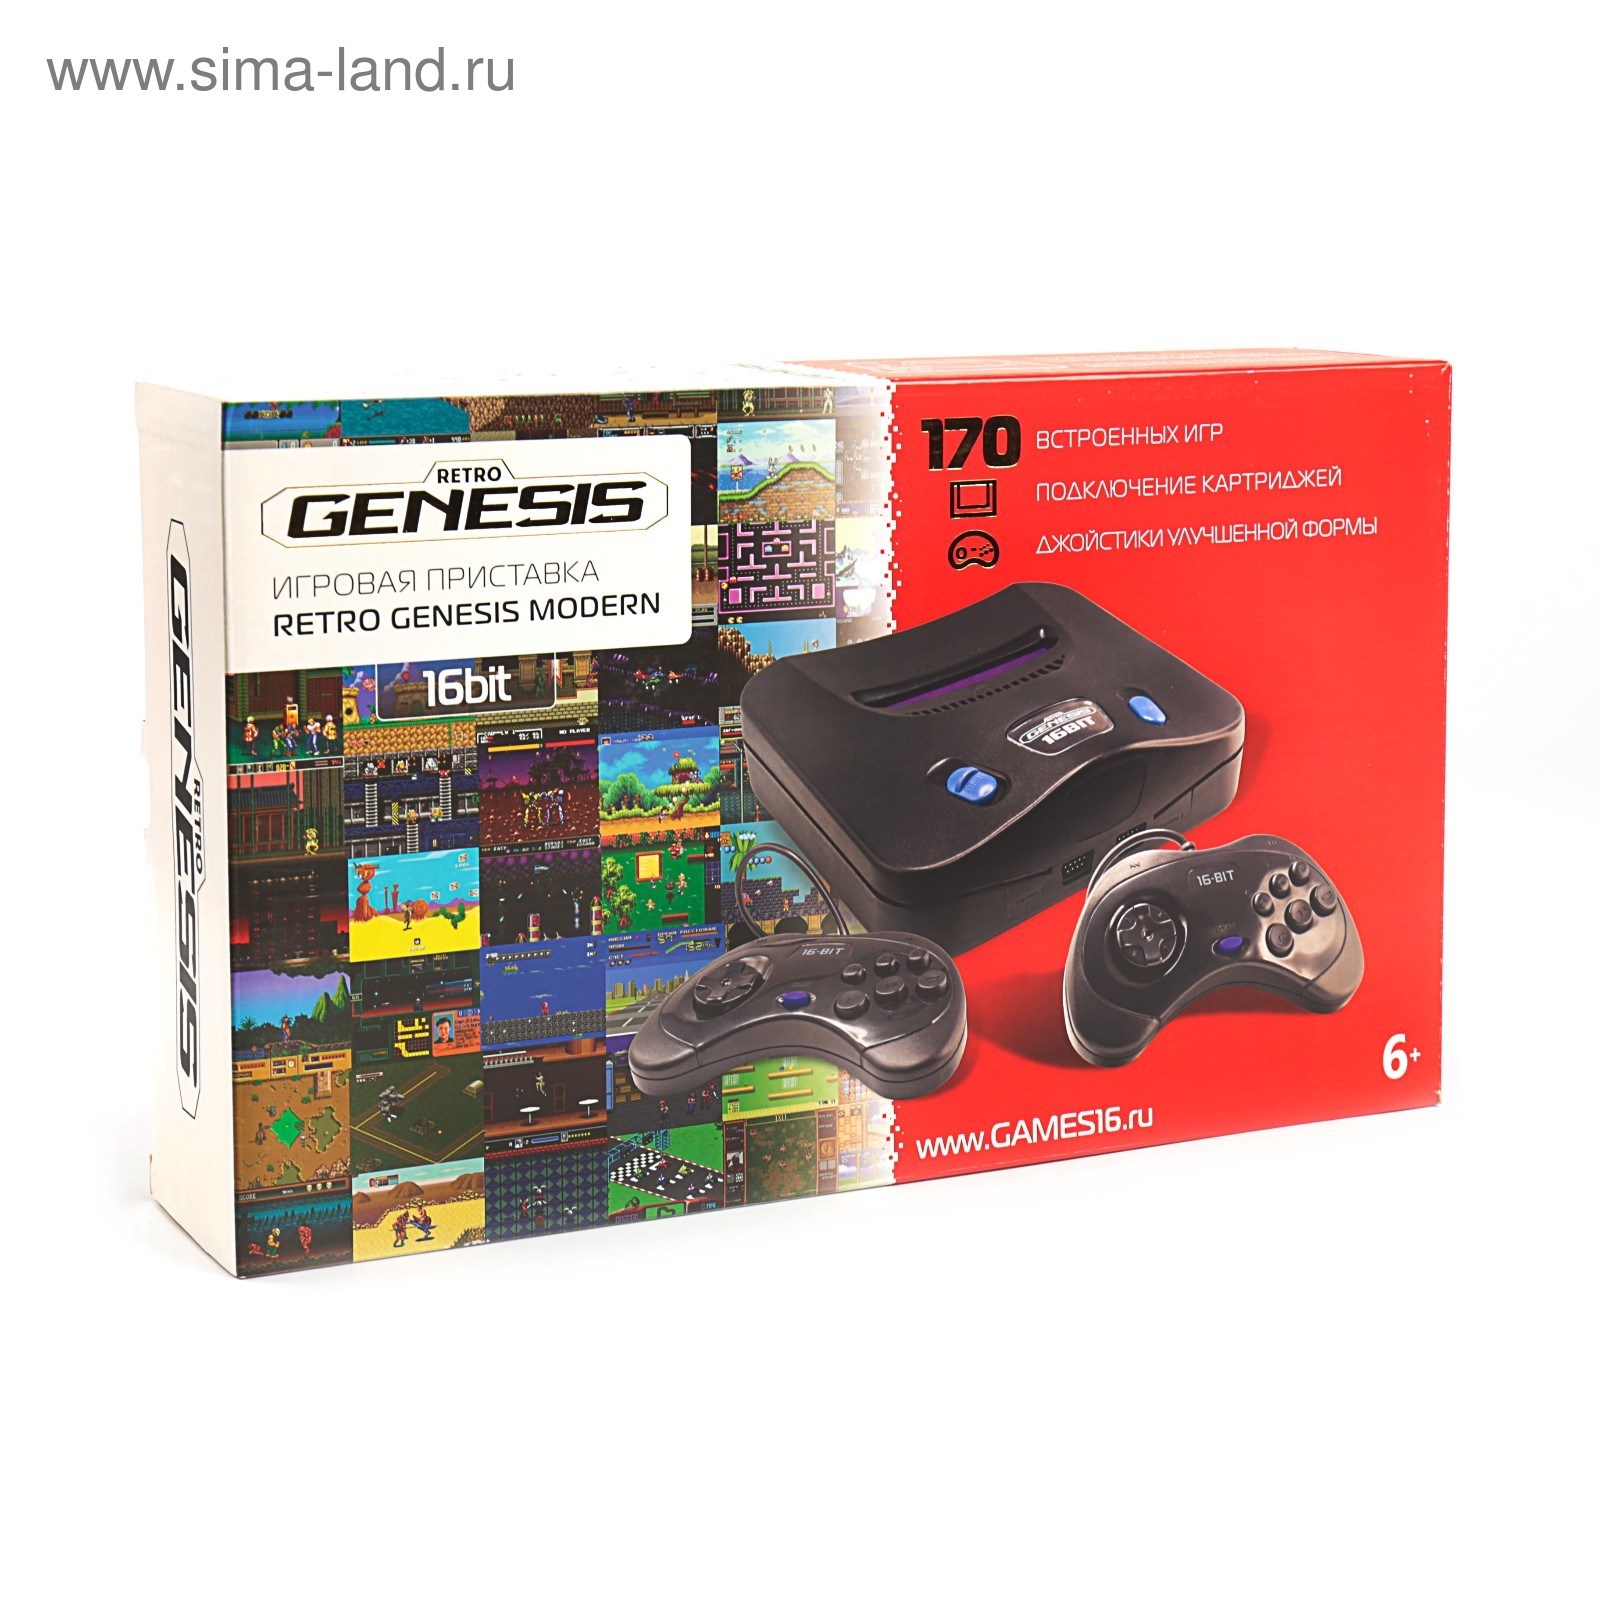 Генезис 16 бит. Игровая приставка Retro Genesis Modern + 170 игр. Приставка Genesis 16 bit Retro 170 игр. Retro Genesis Modern Wireless 16 bit 170 игр.